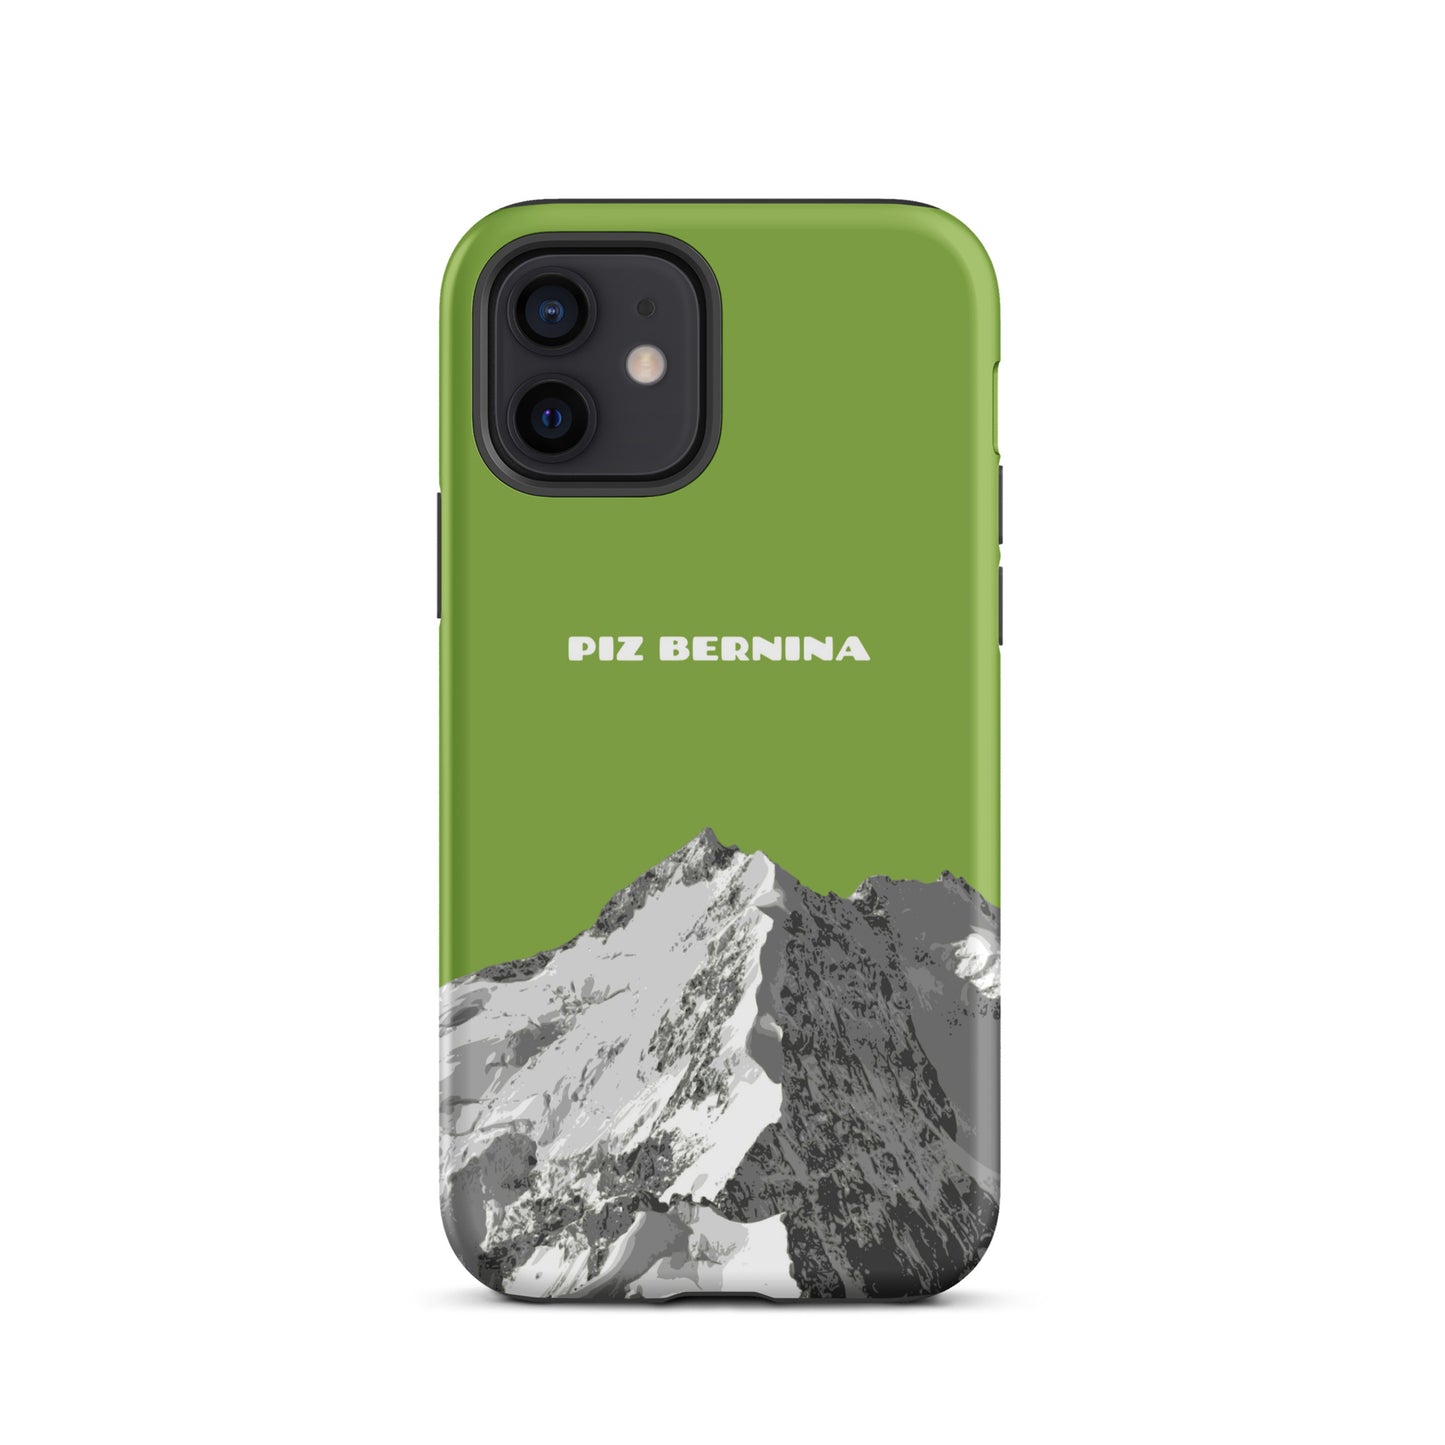 Hülle für das iPhone 12 von Apple in der Farbe Gelbgrün, dass den Piz Bernina in Graubünden zeigt.